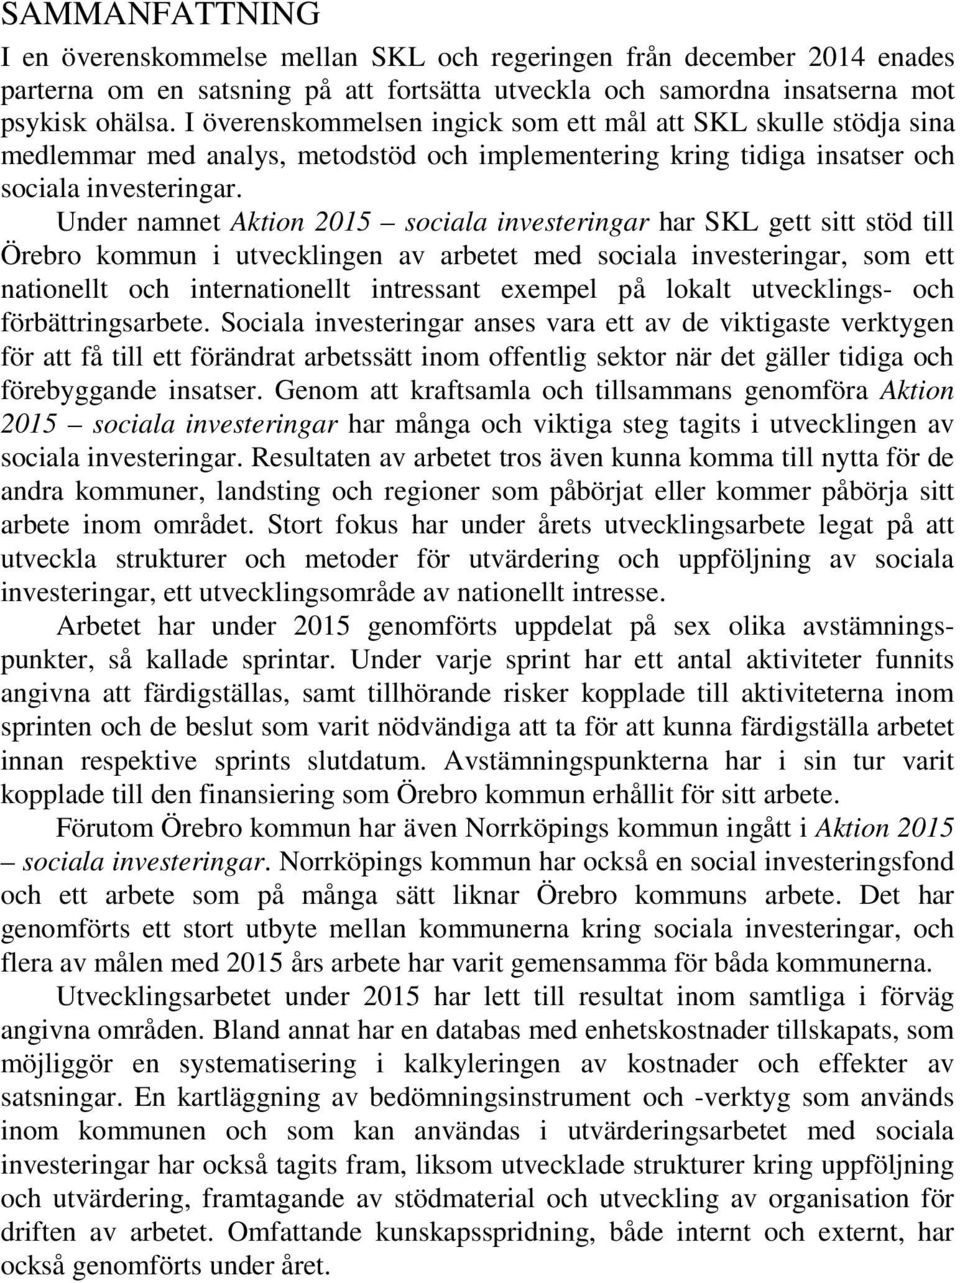 Under namnet Aktion 2015 sociala investeringar har SKL gett sitt stöd till Örebro kommun i utvecklingen av arbetet med sociala investeringar, som ett nationellt och internationellt intressant exempel